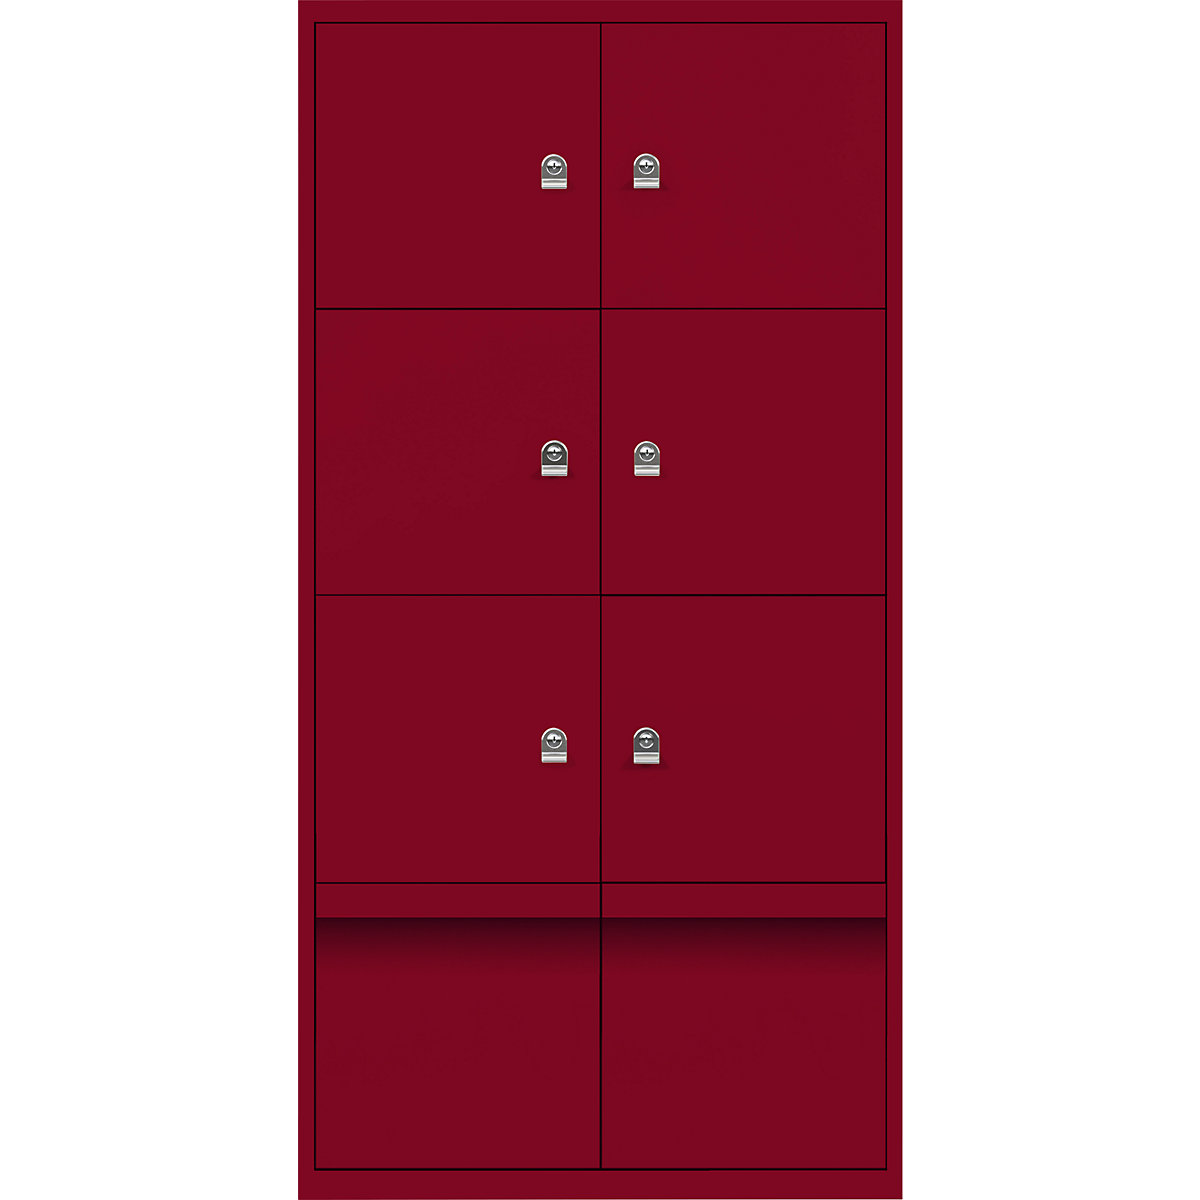 Armoire à casiers LateralFile™ – BISLEY, 6 casiers et 2 tiroirs hauteur 375 mm, rouge cardinal-6